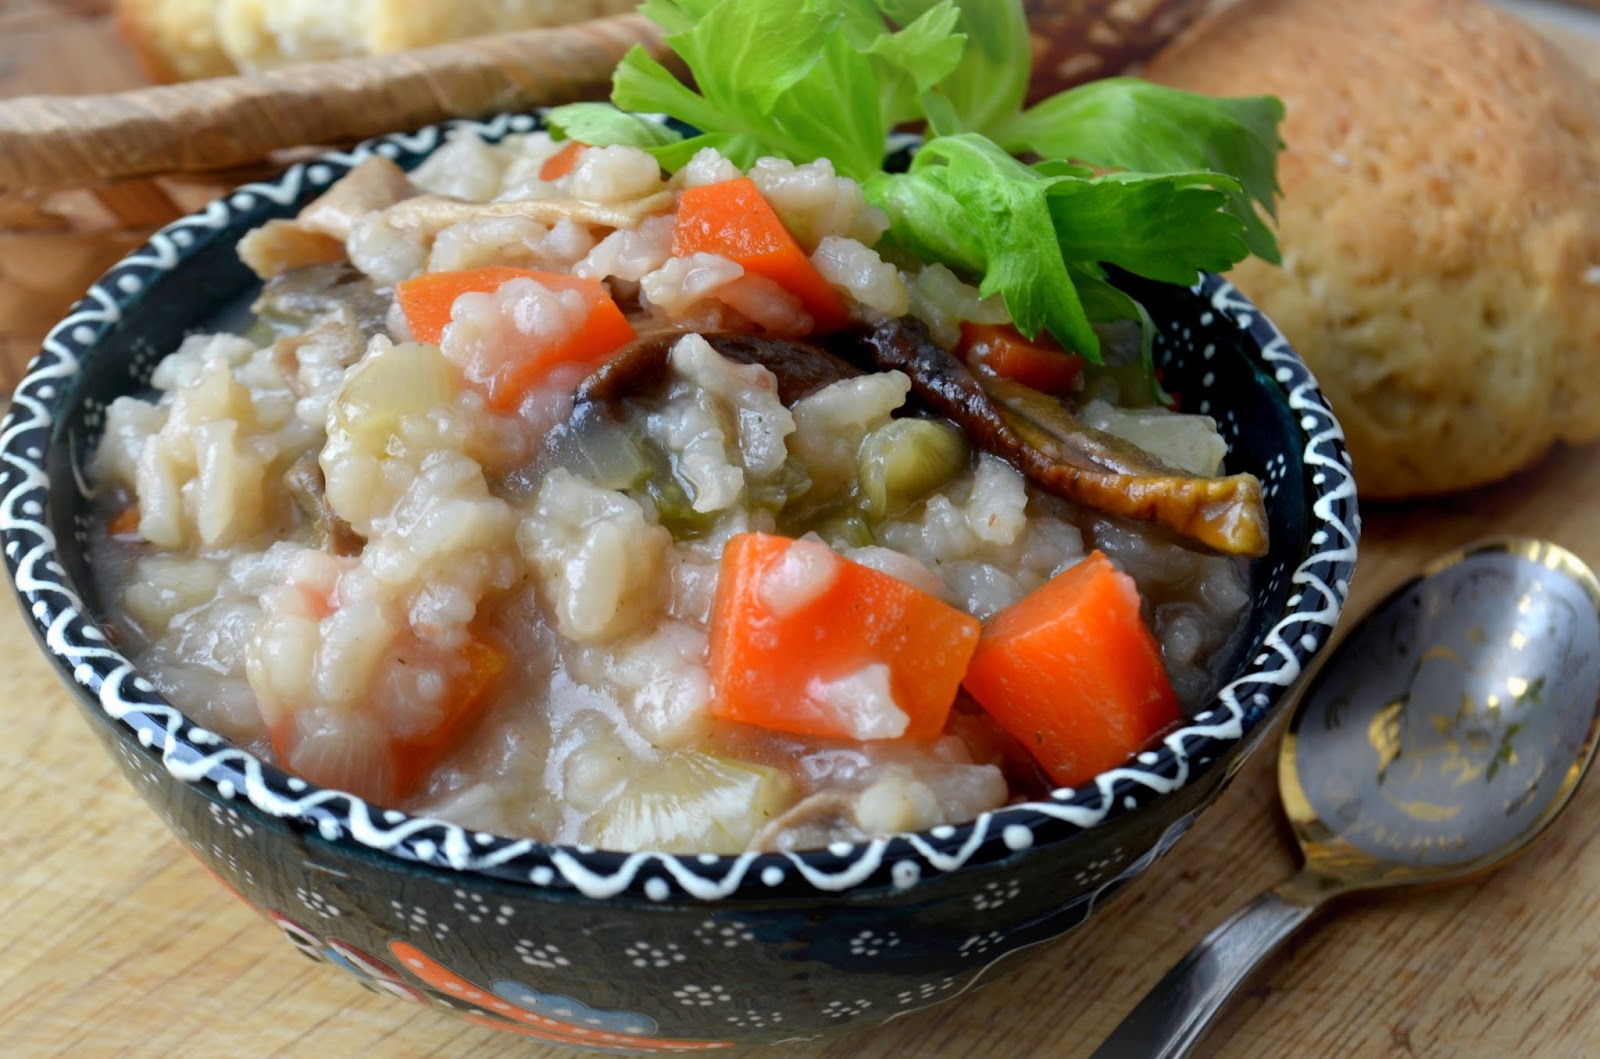 Суп рисовый с грибами. Рисовый суп с грибами постный. Польпеттини. Вьетнамский рисовый суп.